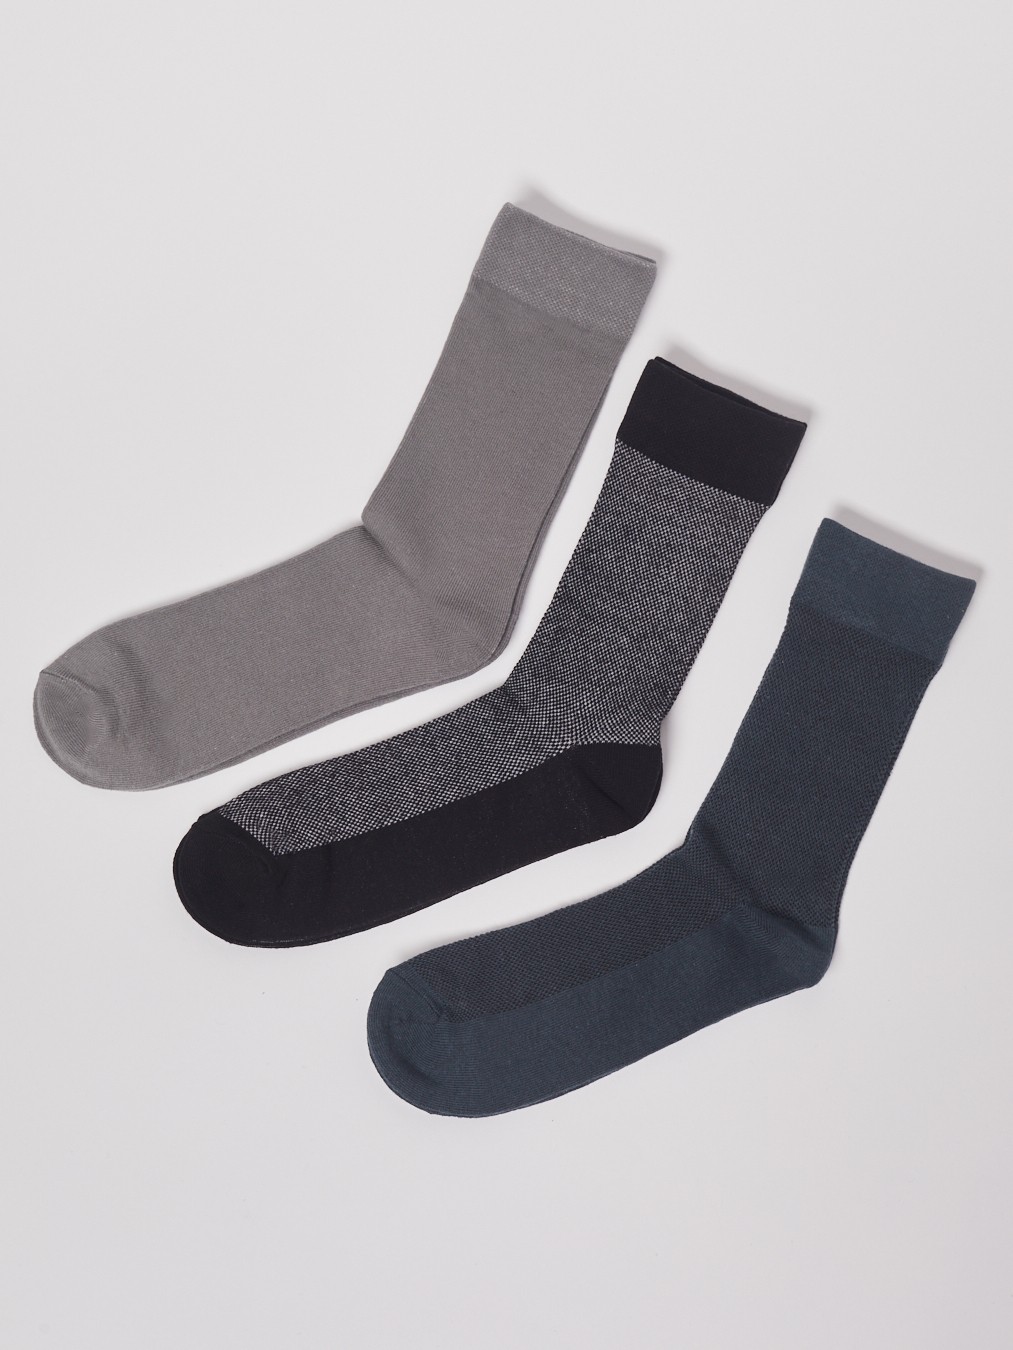 Набор высоких носков (3 пары в комплекте) zolla 01311995P155, цвет серый, размер 25-27